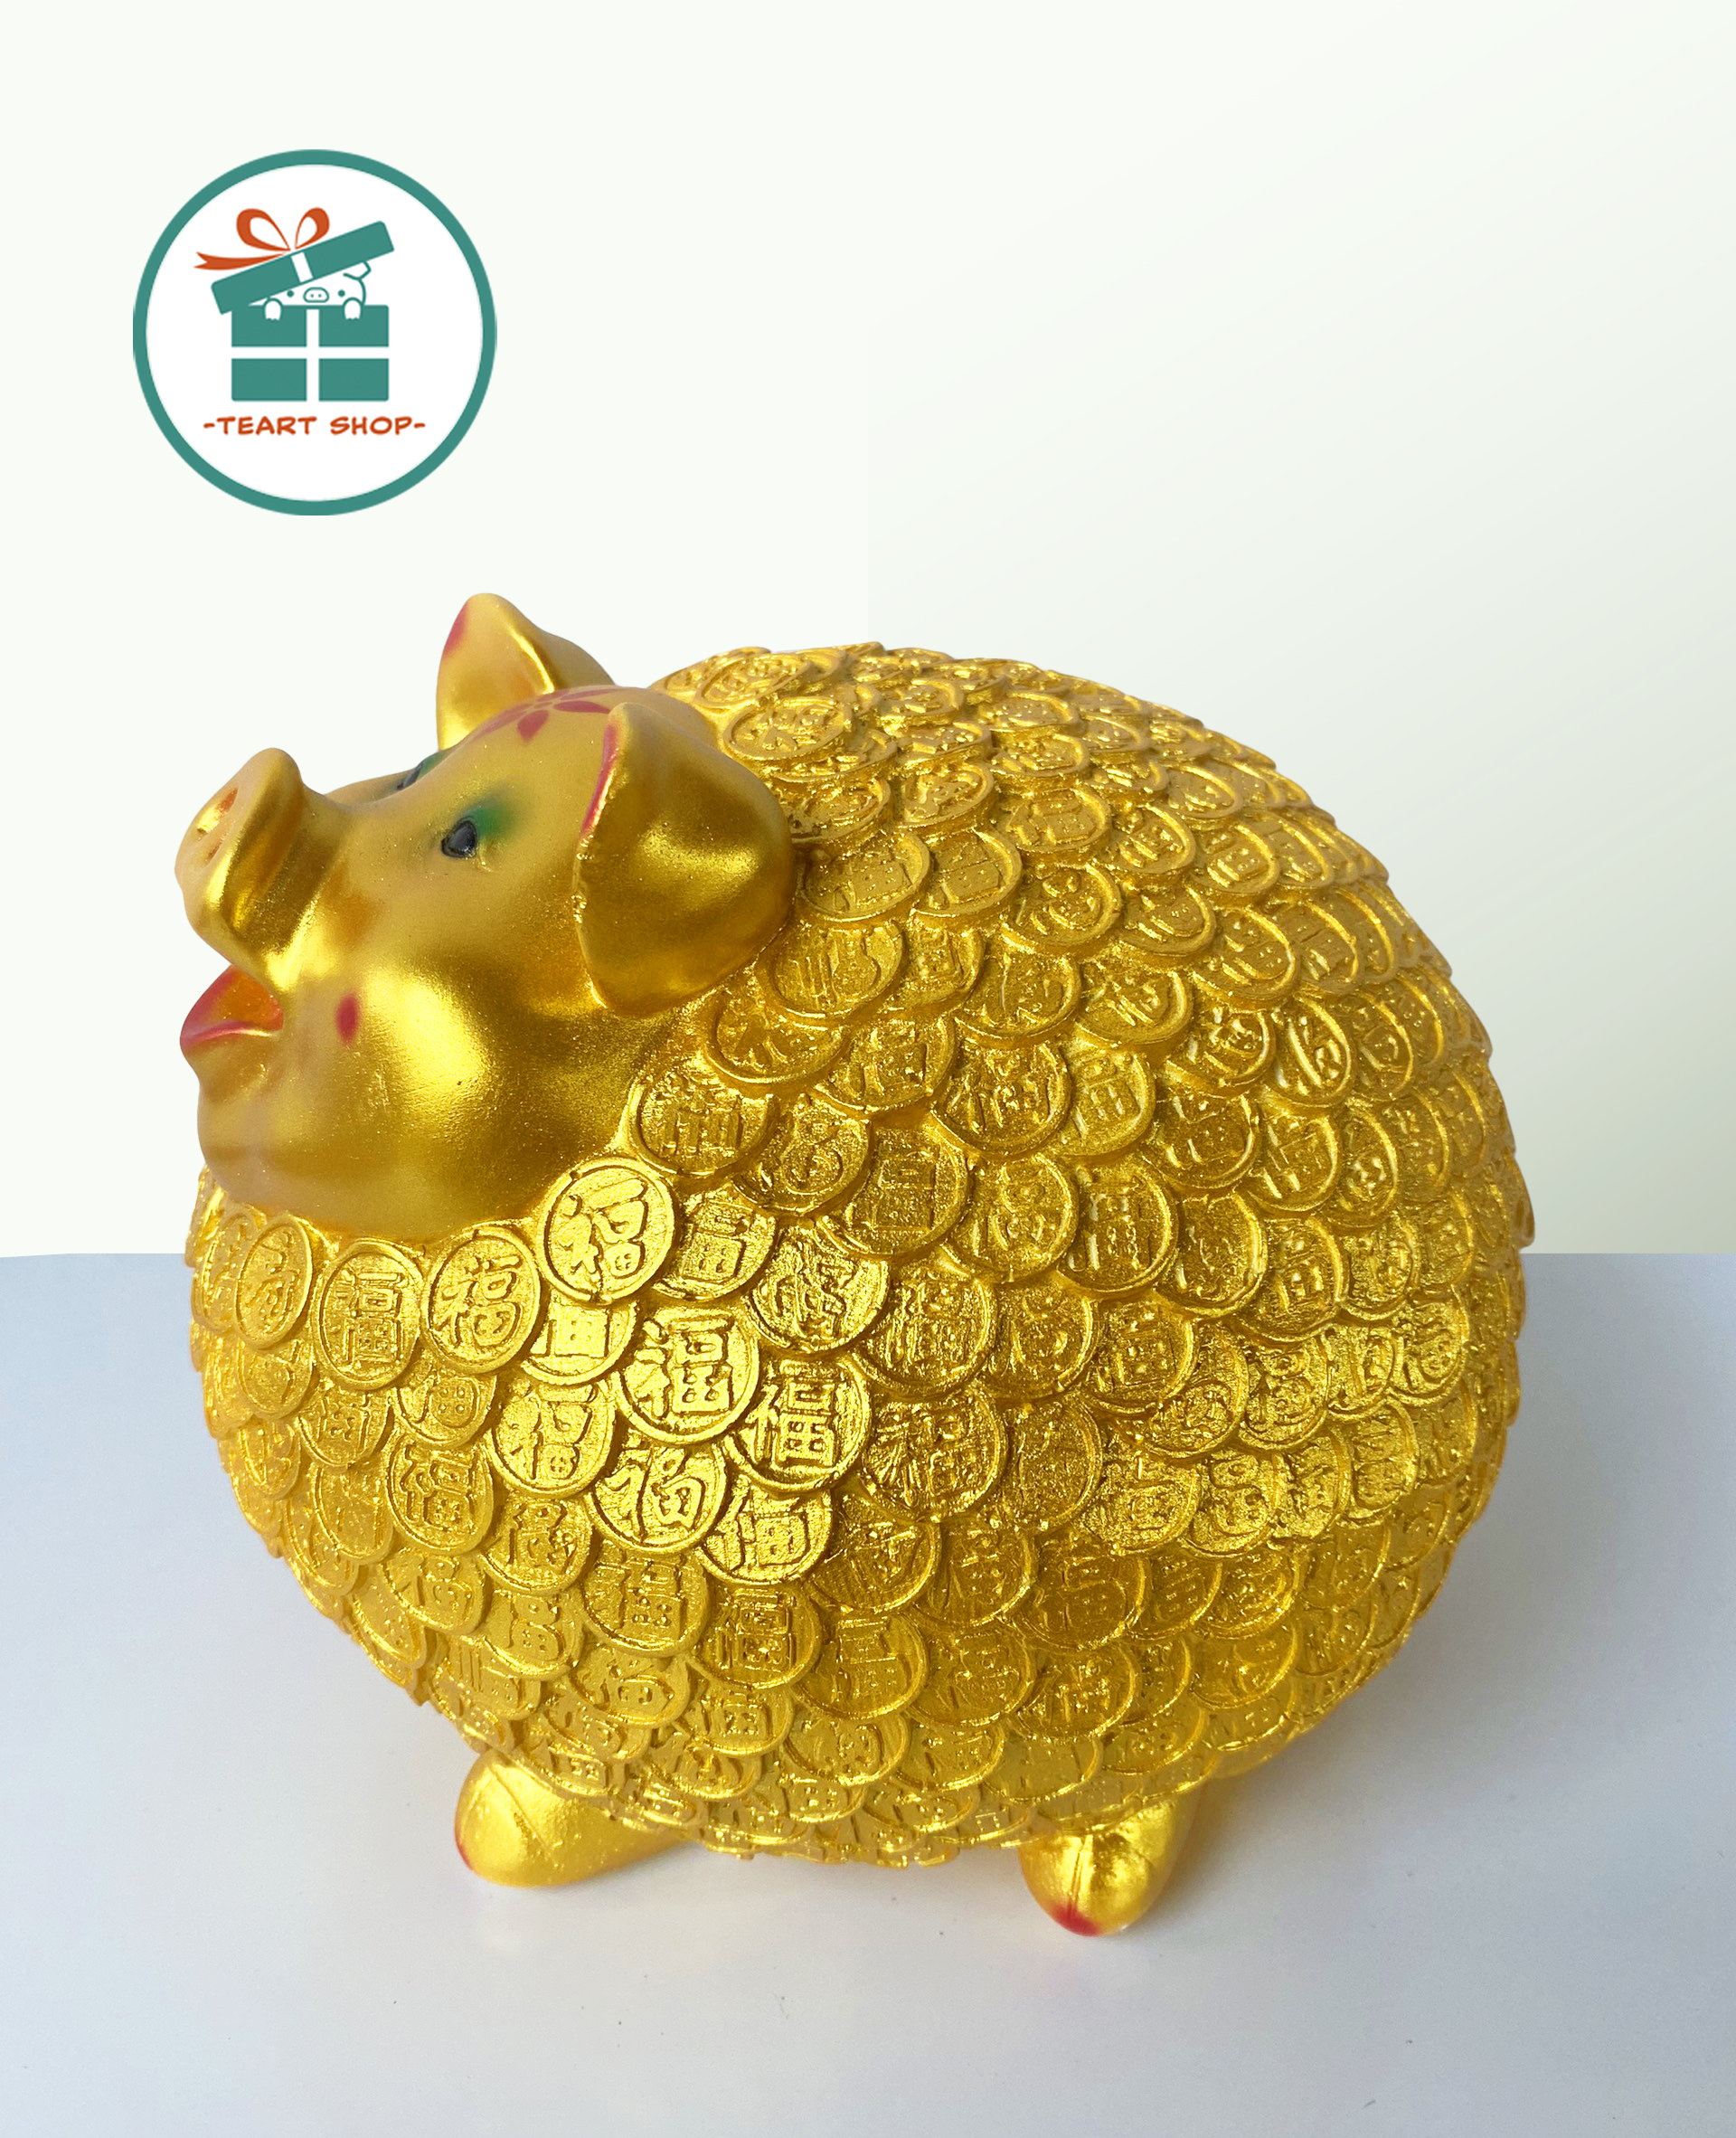 [Teart Shop] Heo đất/lợn đất tiết kiệm Nhím đồng tiền vàng Cute Size lớn 23x23x23 cm